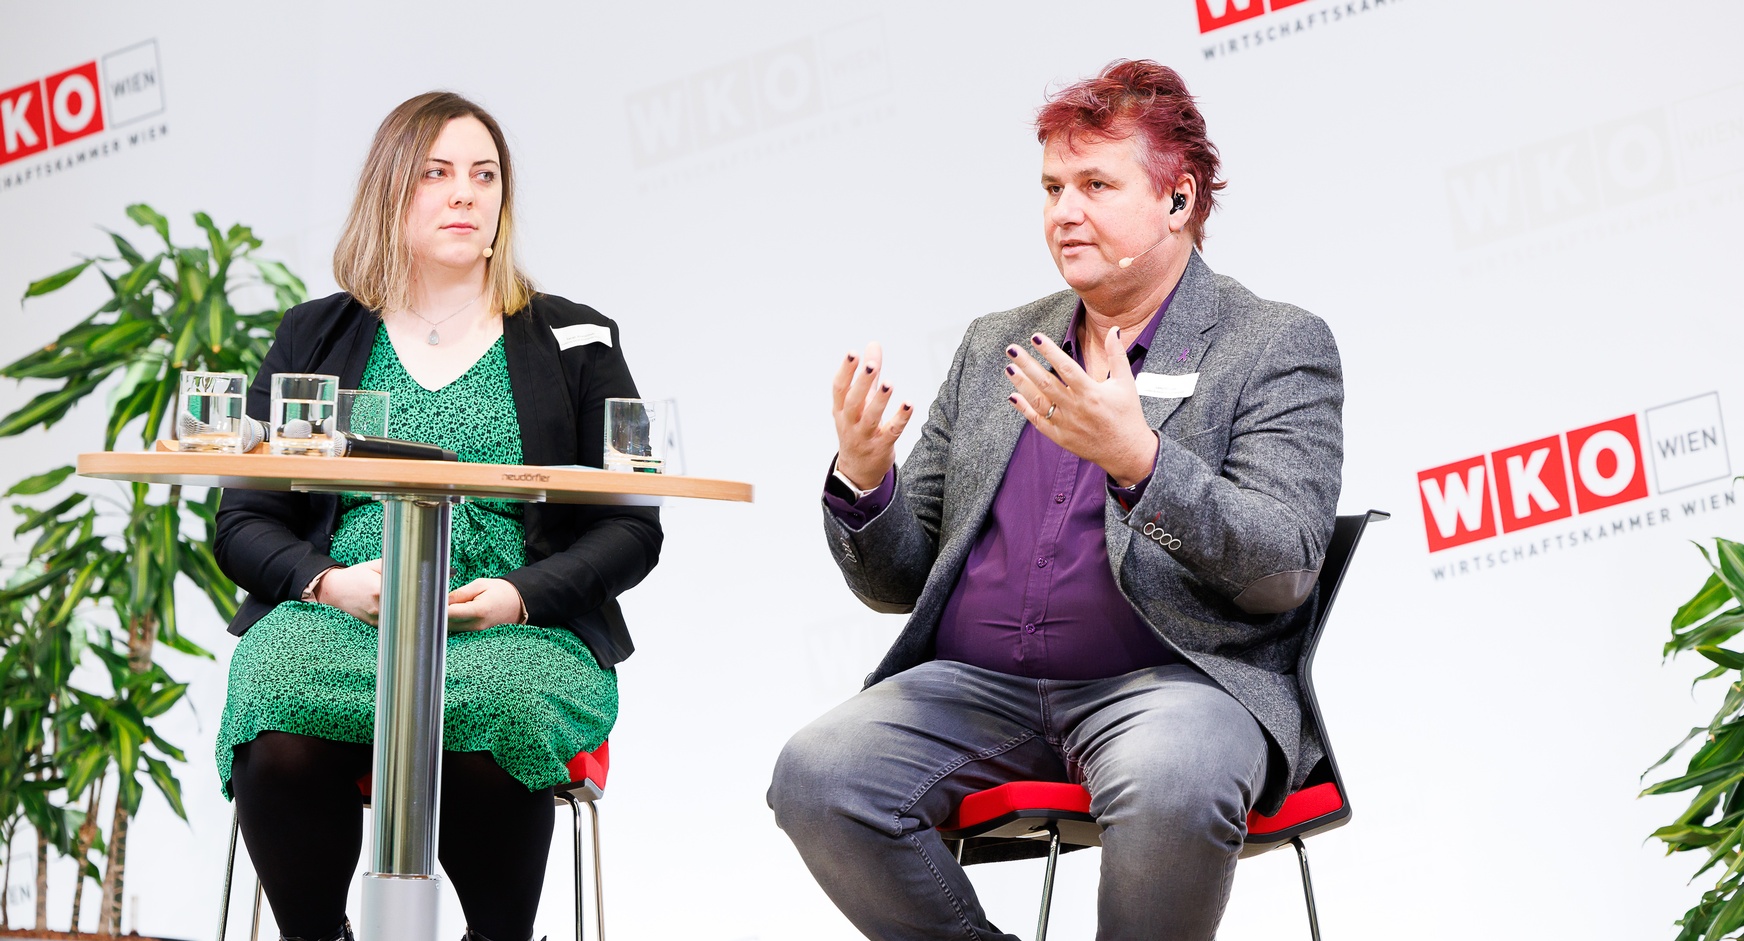 Zwei Personen mit Headmikrofonen sitzen auf erhöhten Stühlen neben Stehtisch auf Bühne vor Wand mit rotweißen Logos WKO und Schriftzügen Wirtschaftskammer Wien, eine der Personen spricht und hält Hände vor sich in die Luft